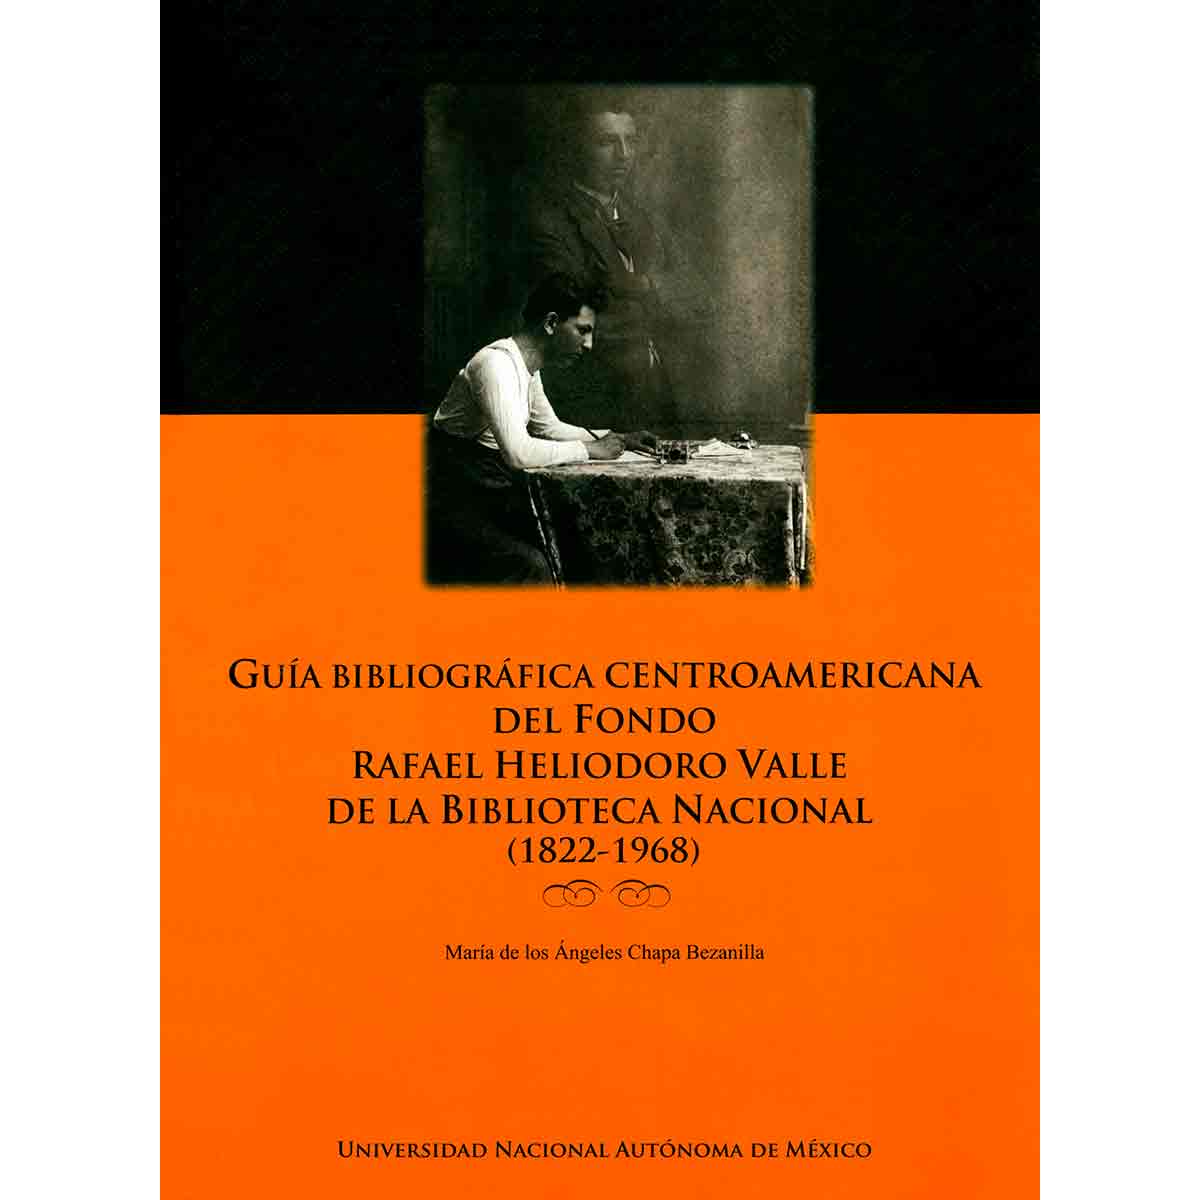 GUÍA BIBLIOGRÁFICA CENTROAMERICANA DEL FONDO RAFAEL HELIODORO VALLE DE LA BIBLIOTECA NACIONAL (1822-1968)